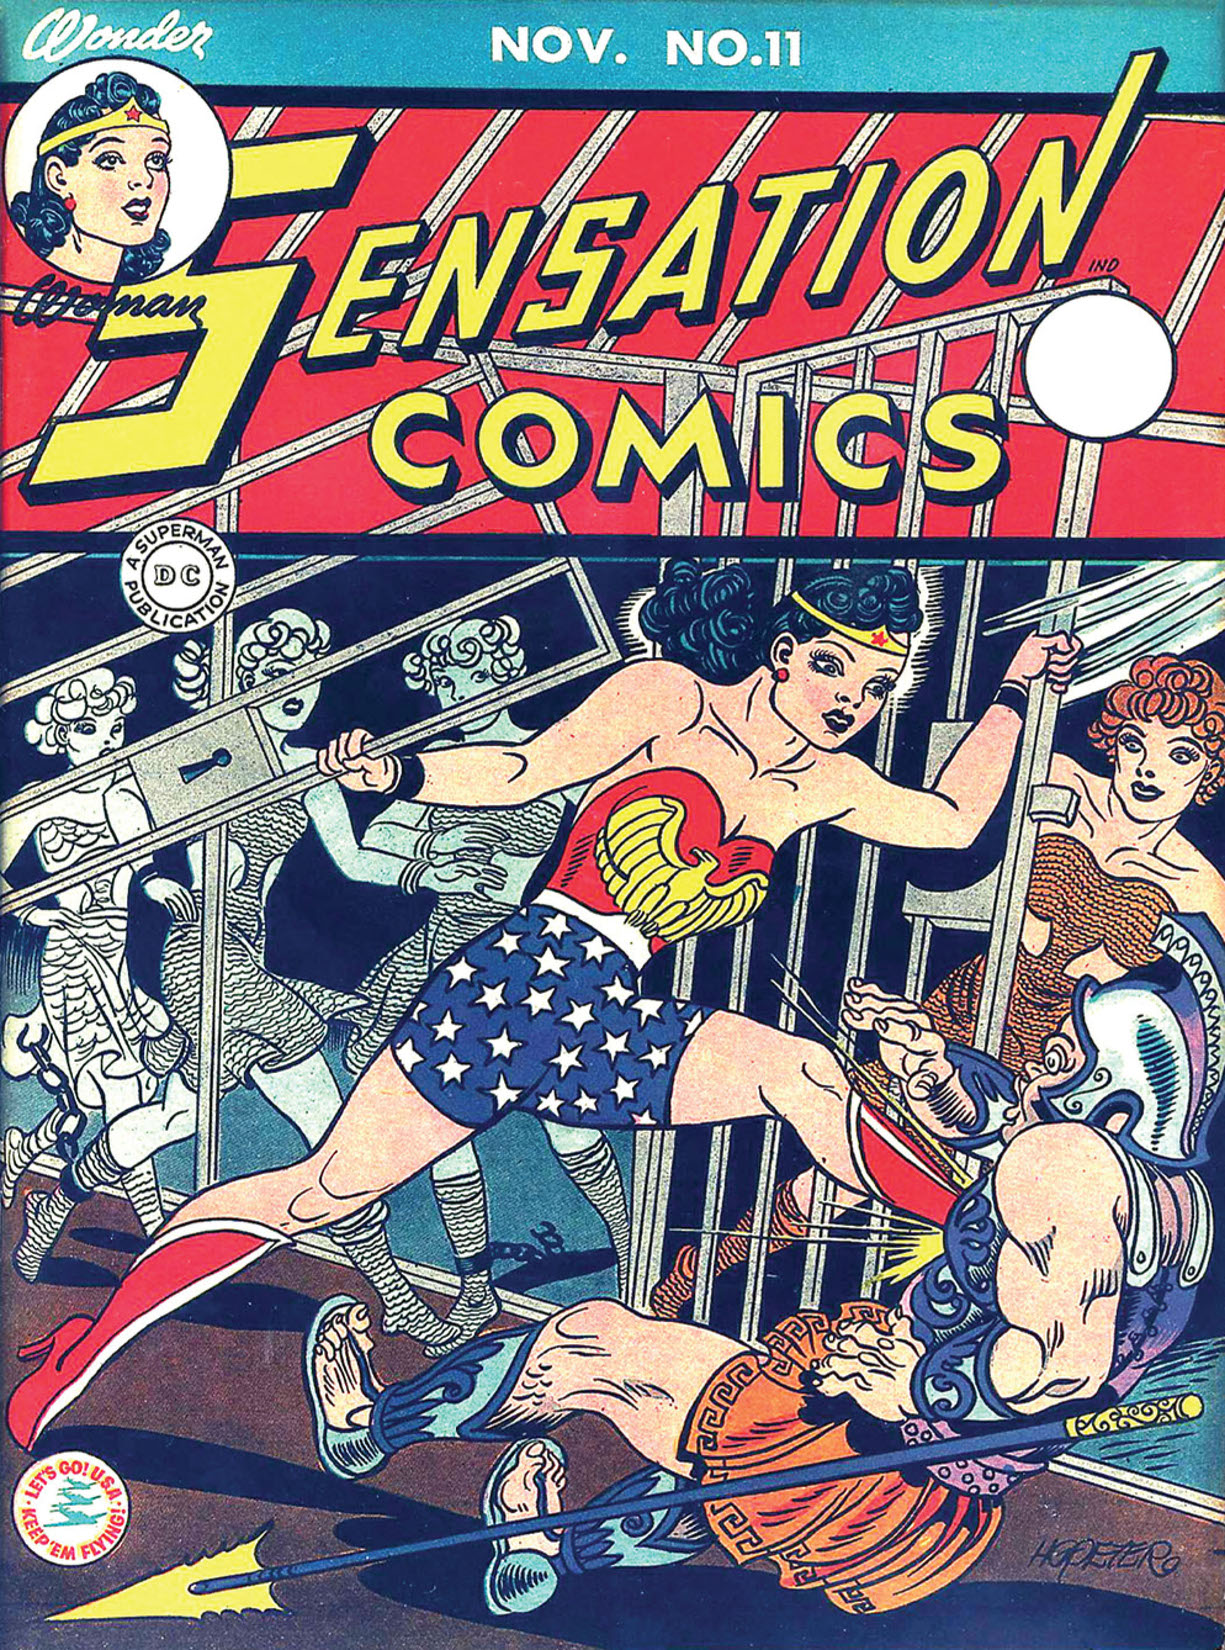 Sensation Comics #11 preview images